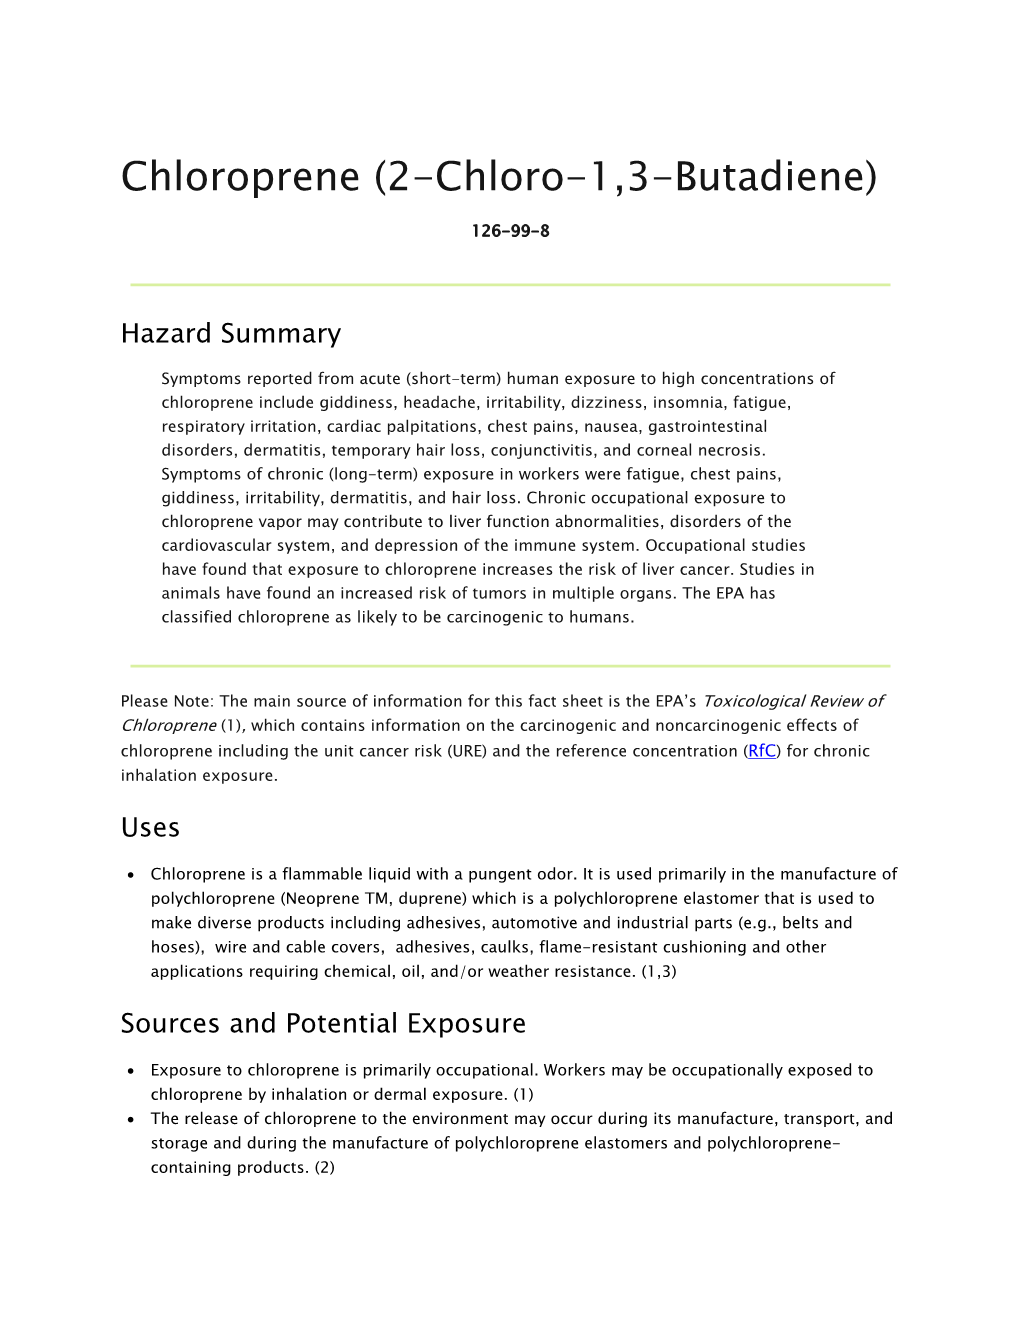 Chloroprene (2-Chloro-1,3-Butadiene)